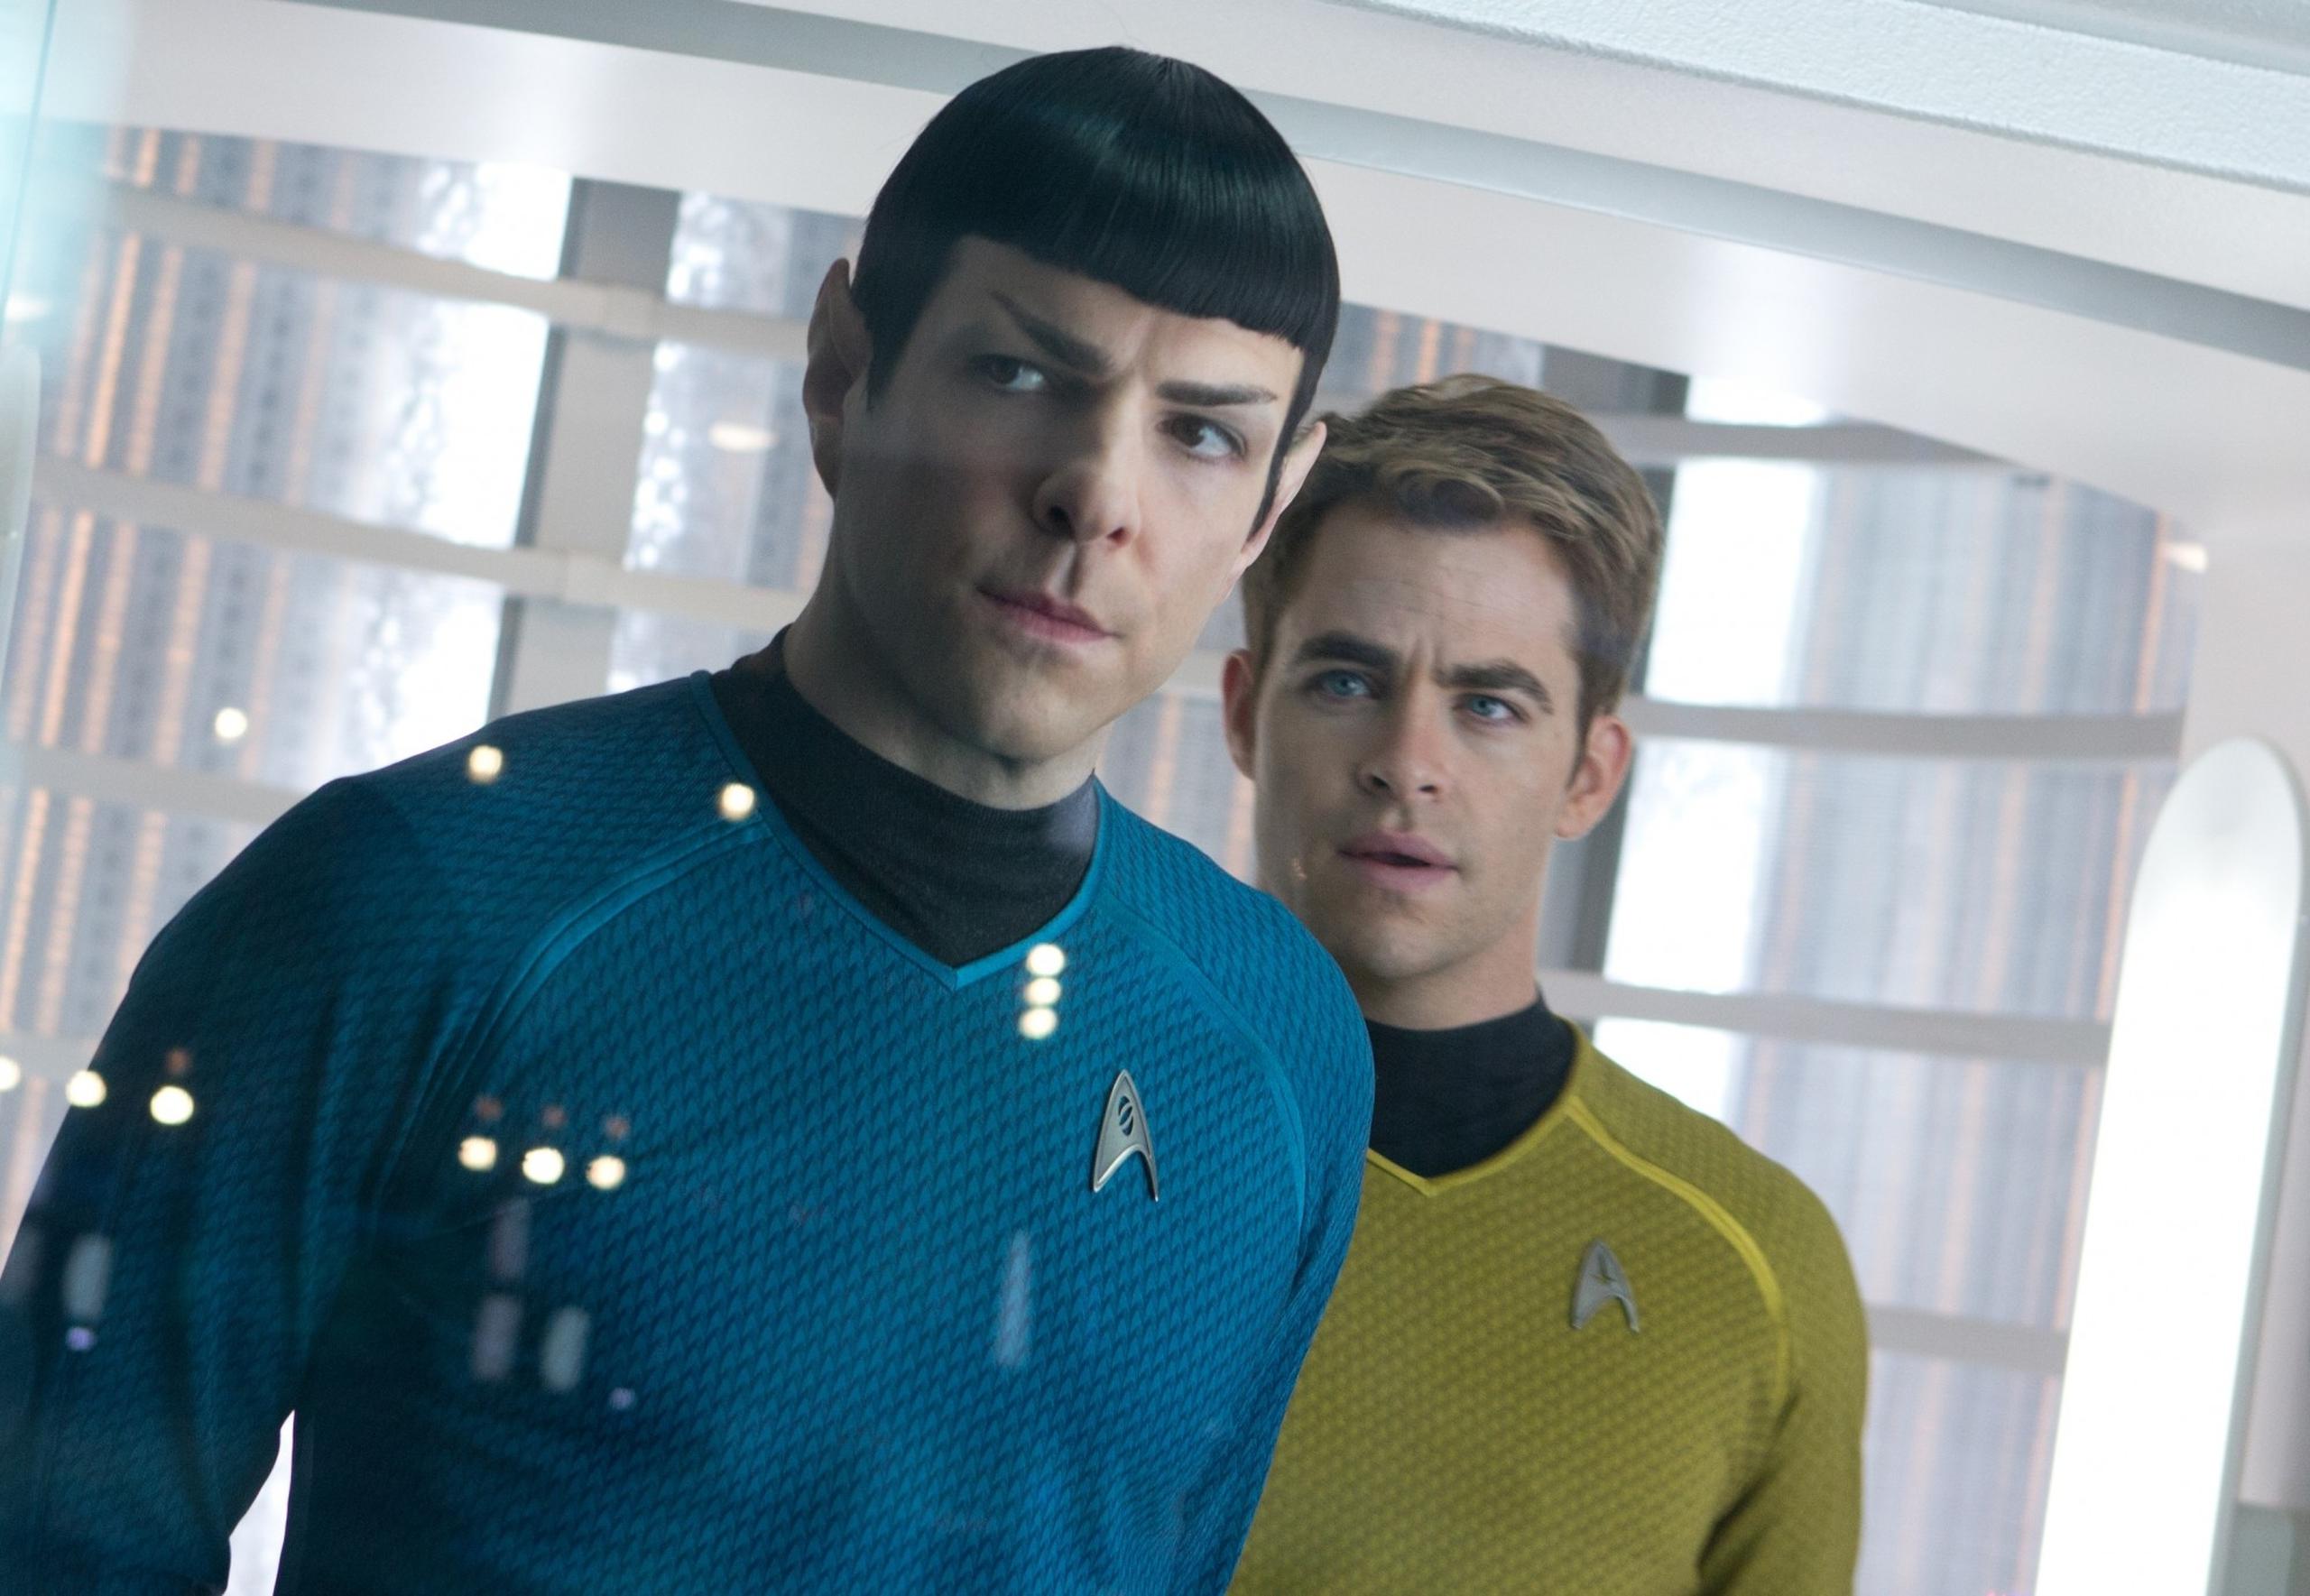 La nueva película volvería a contar con su elenco regular, incluidos Zachary Quinto como Spock y Chris Pine como el capitán Kirk.